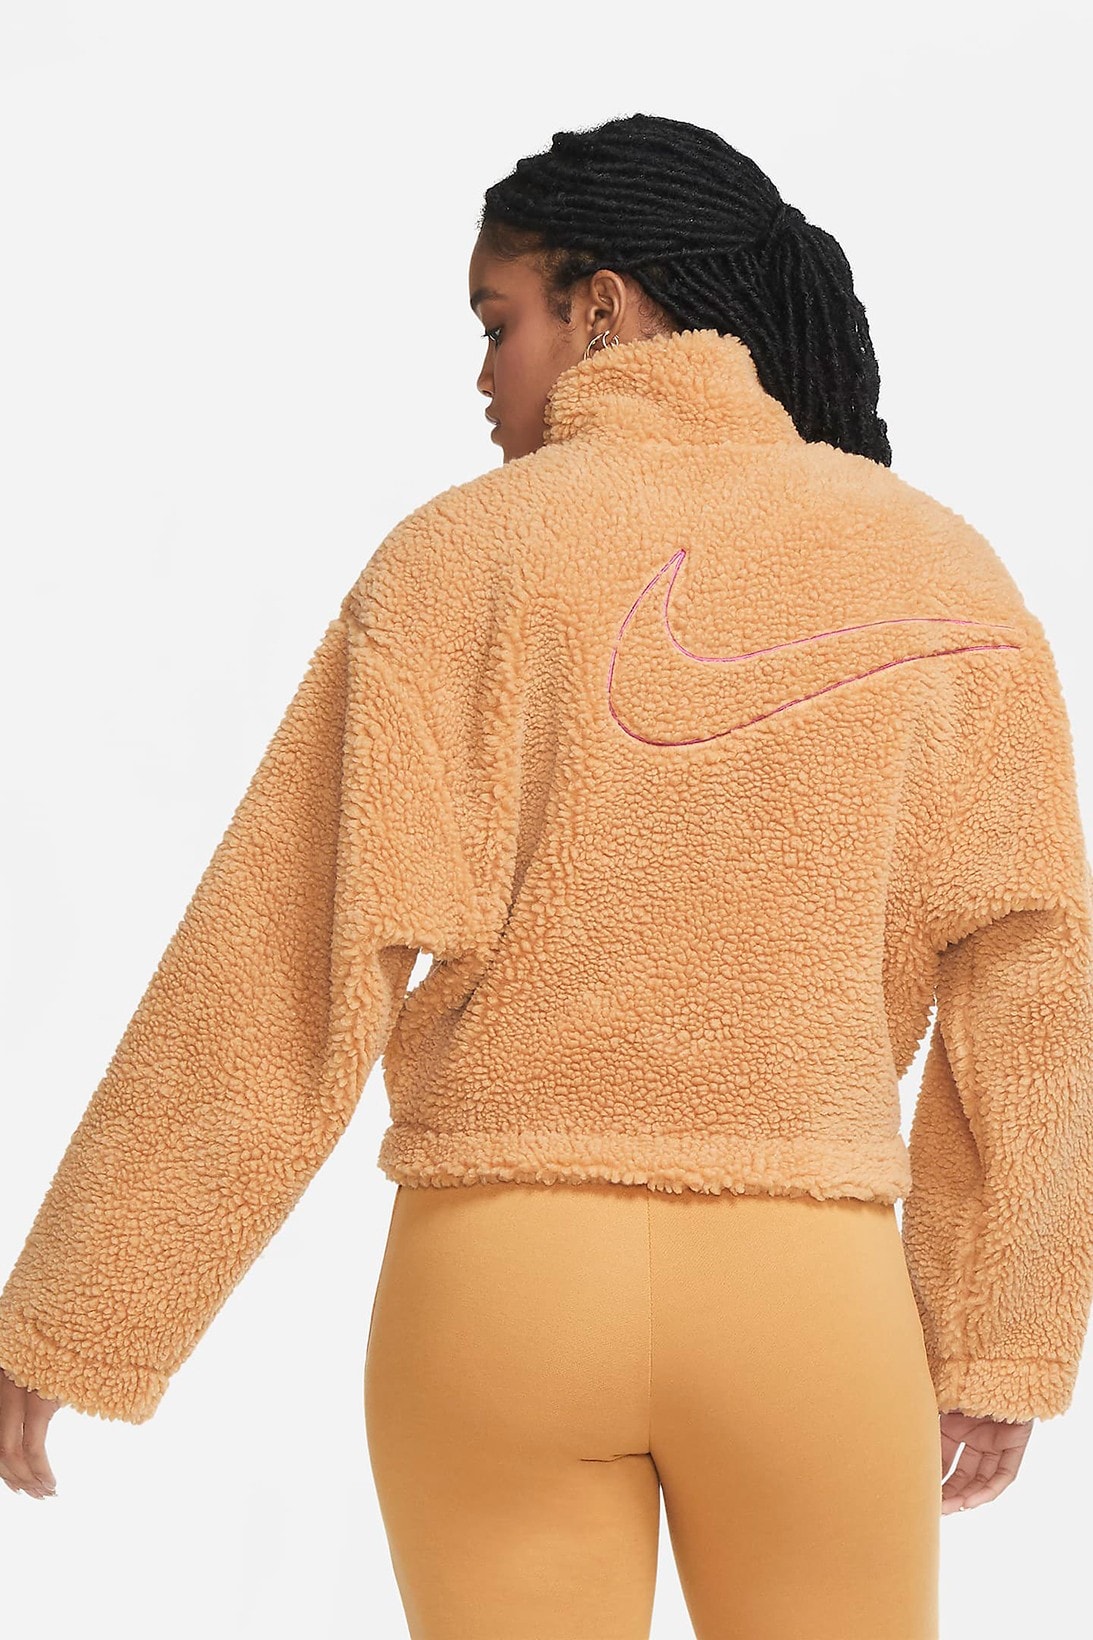 nike sportswear womens swoosh shearling fleece jacket outerwear pink white orange colorways 2020 fw